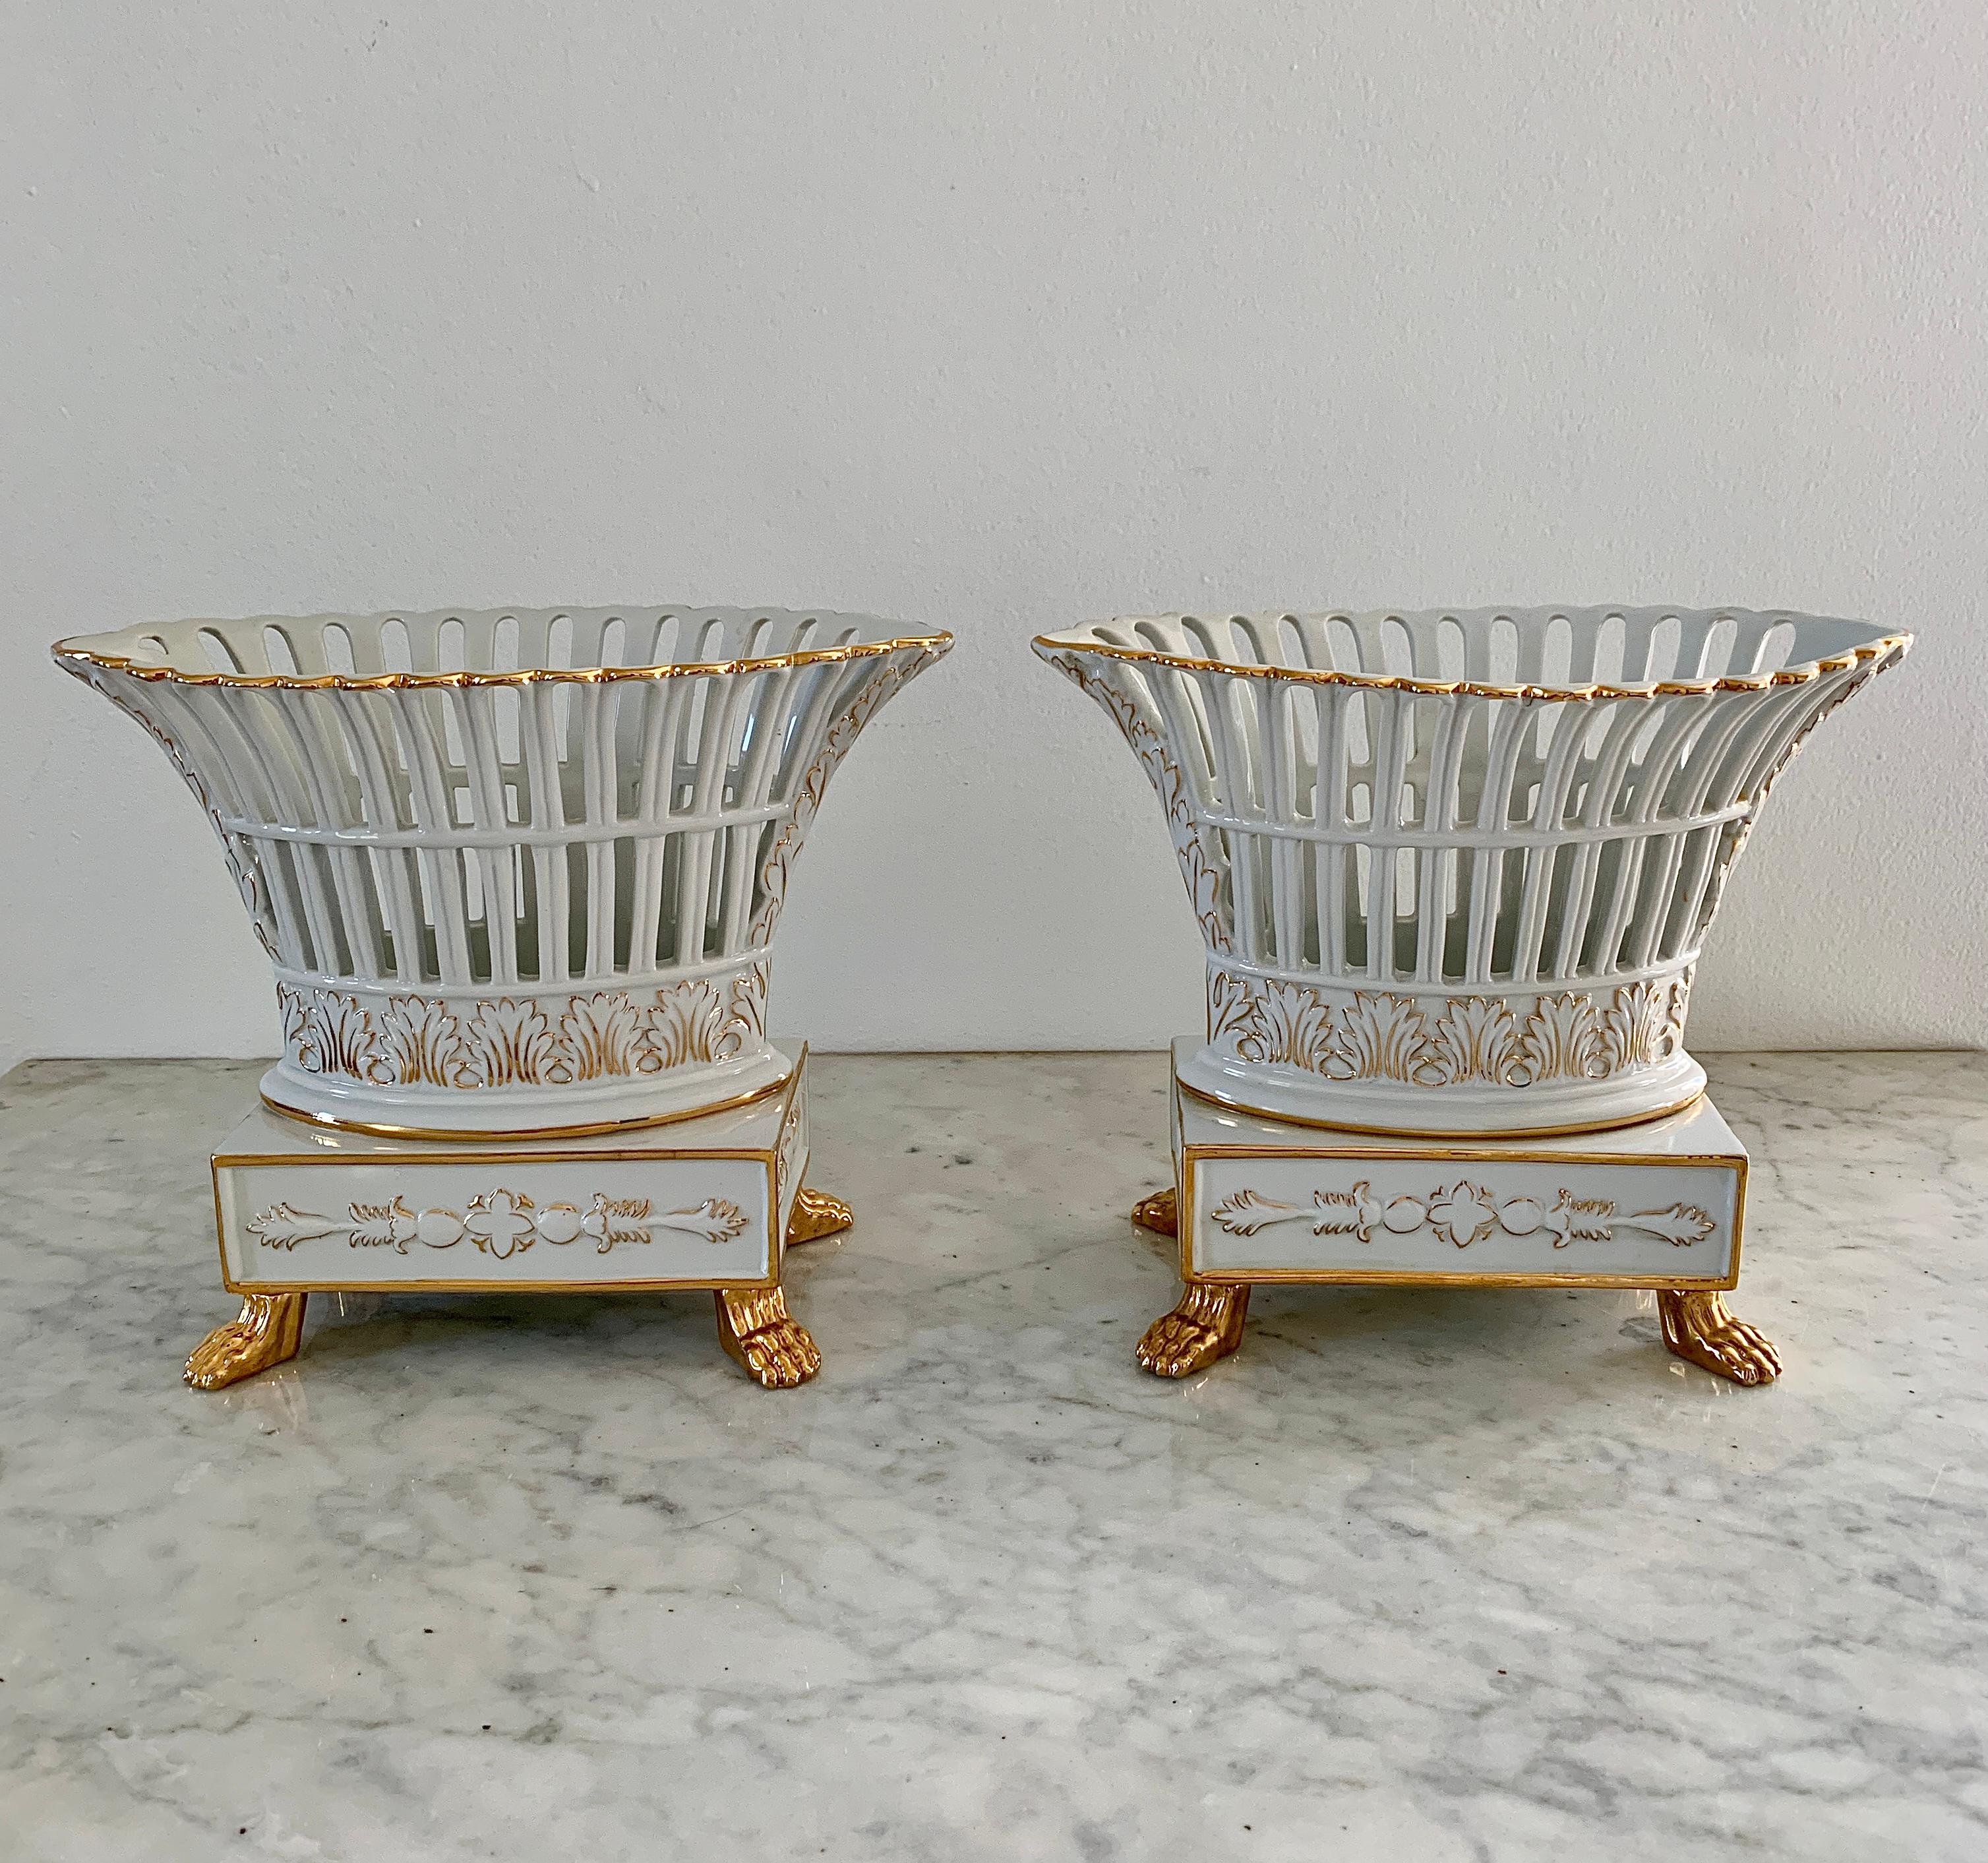 Une superbe paire de compotier en porcelaine réticulée de style Régence, blanc et or, avec des pieds en forme de pattes de lion.

Circa fin du 20ème siècle.

Mesures : 9,25 